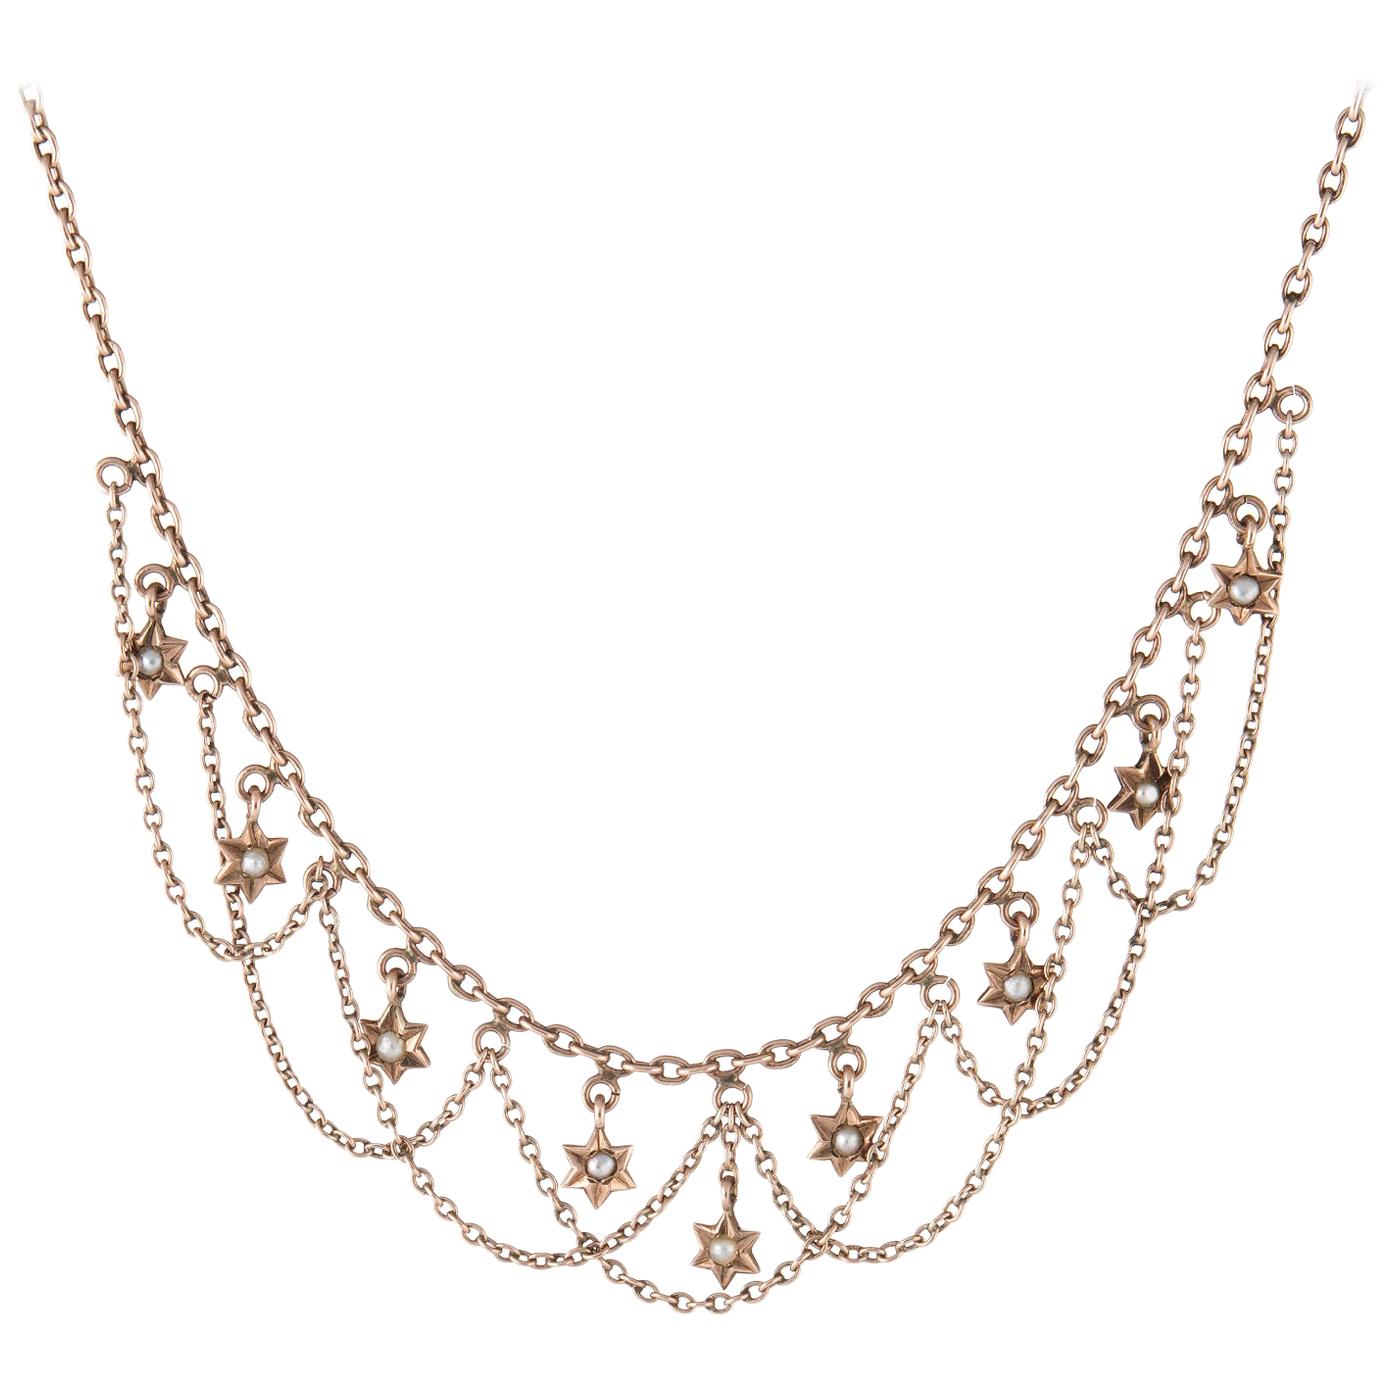 Antique Deco Necklace Star Fringe 10 Karat Rose Gold Estate Fine Jewelry Vintage